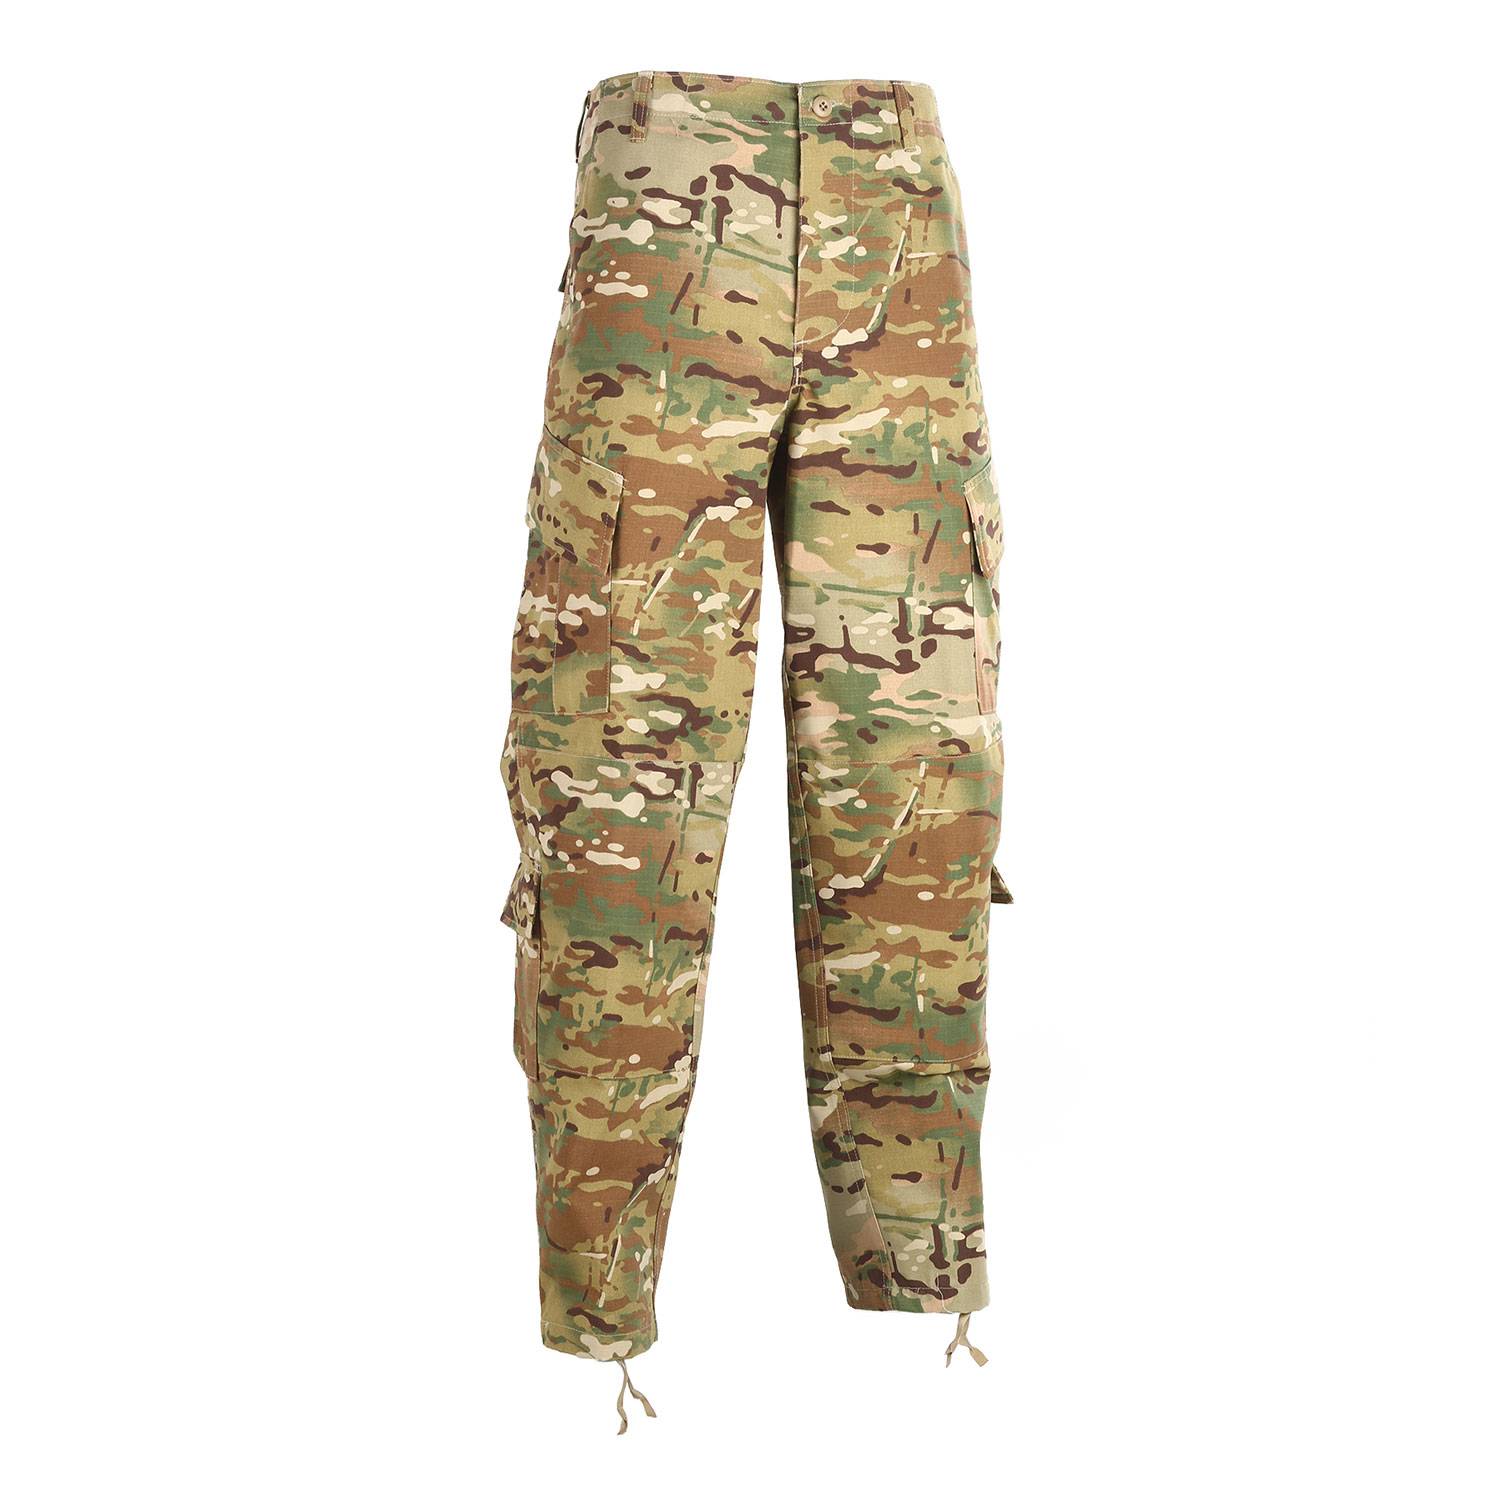 TRU-SPEC Army Combat Uniform Pants